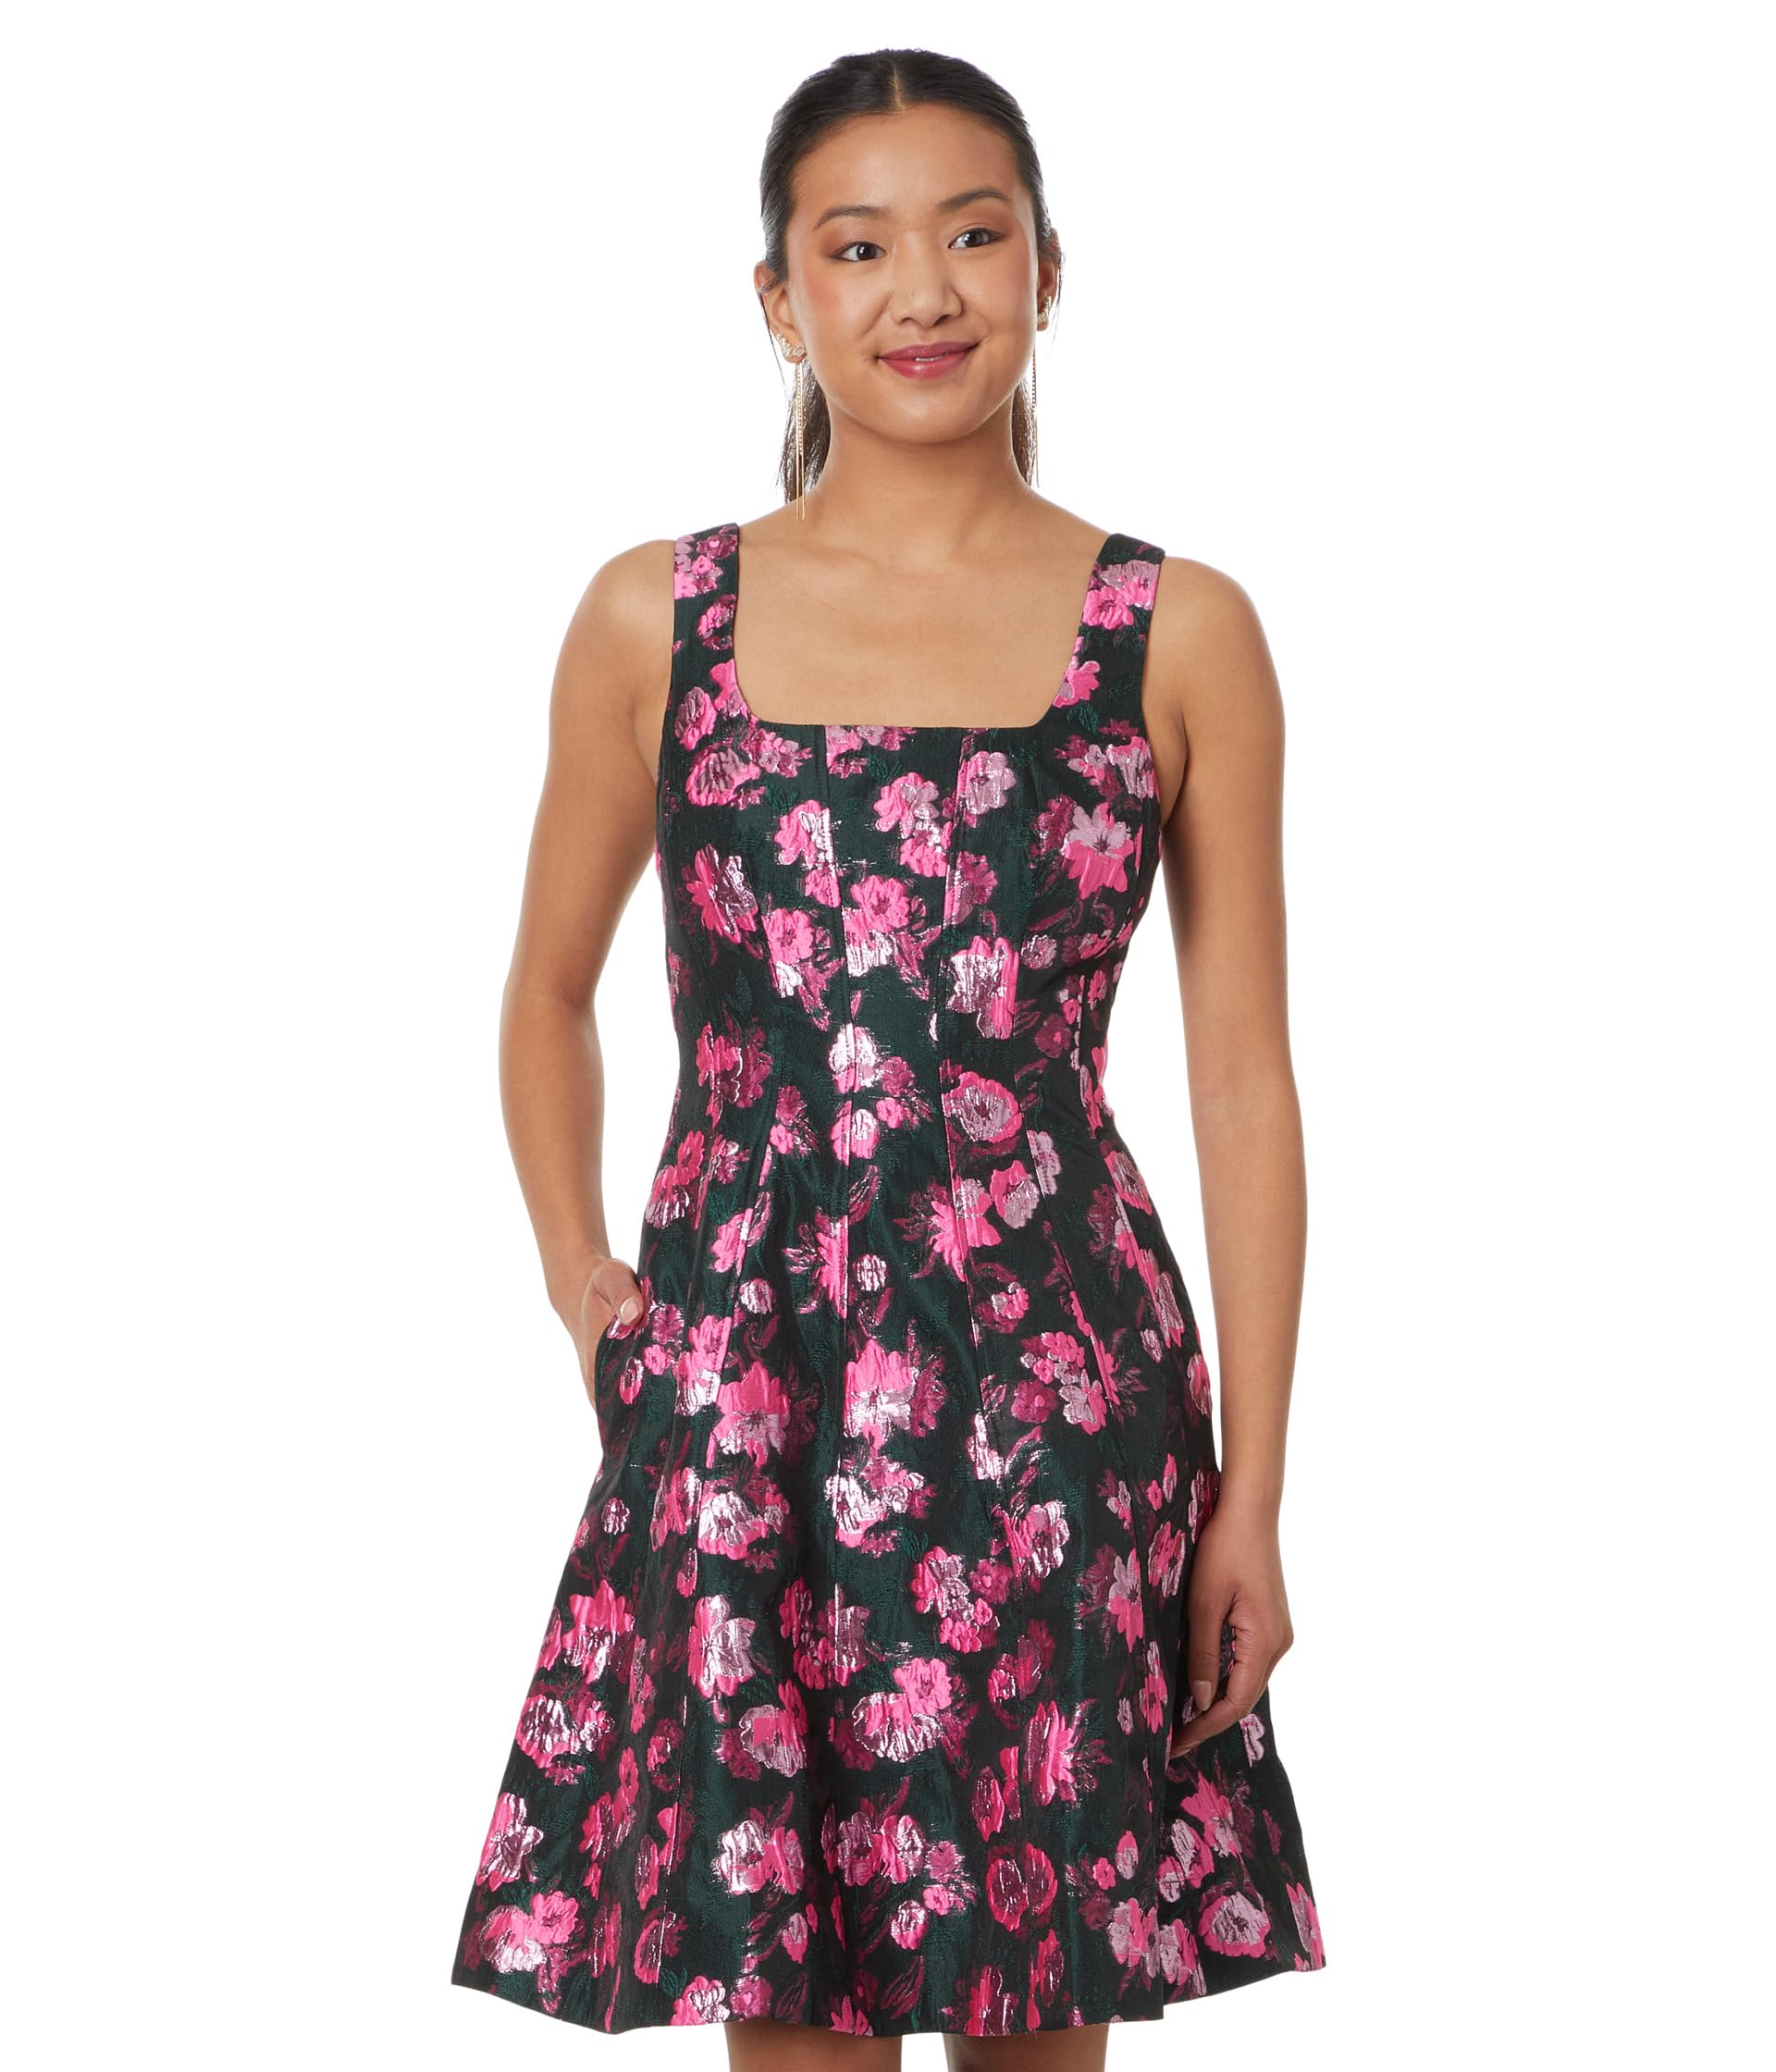 Жаккардовое платье Leya с цветочным принтом Lilly Pulitzer